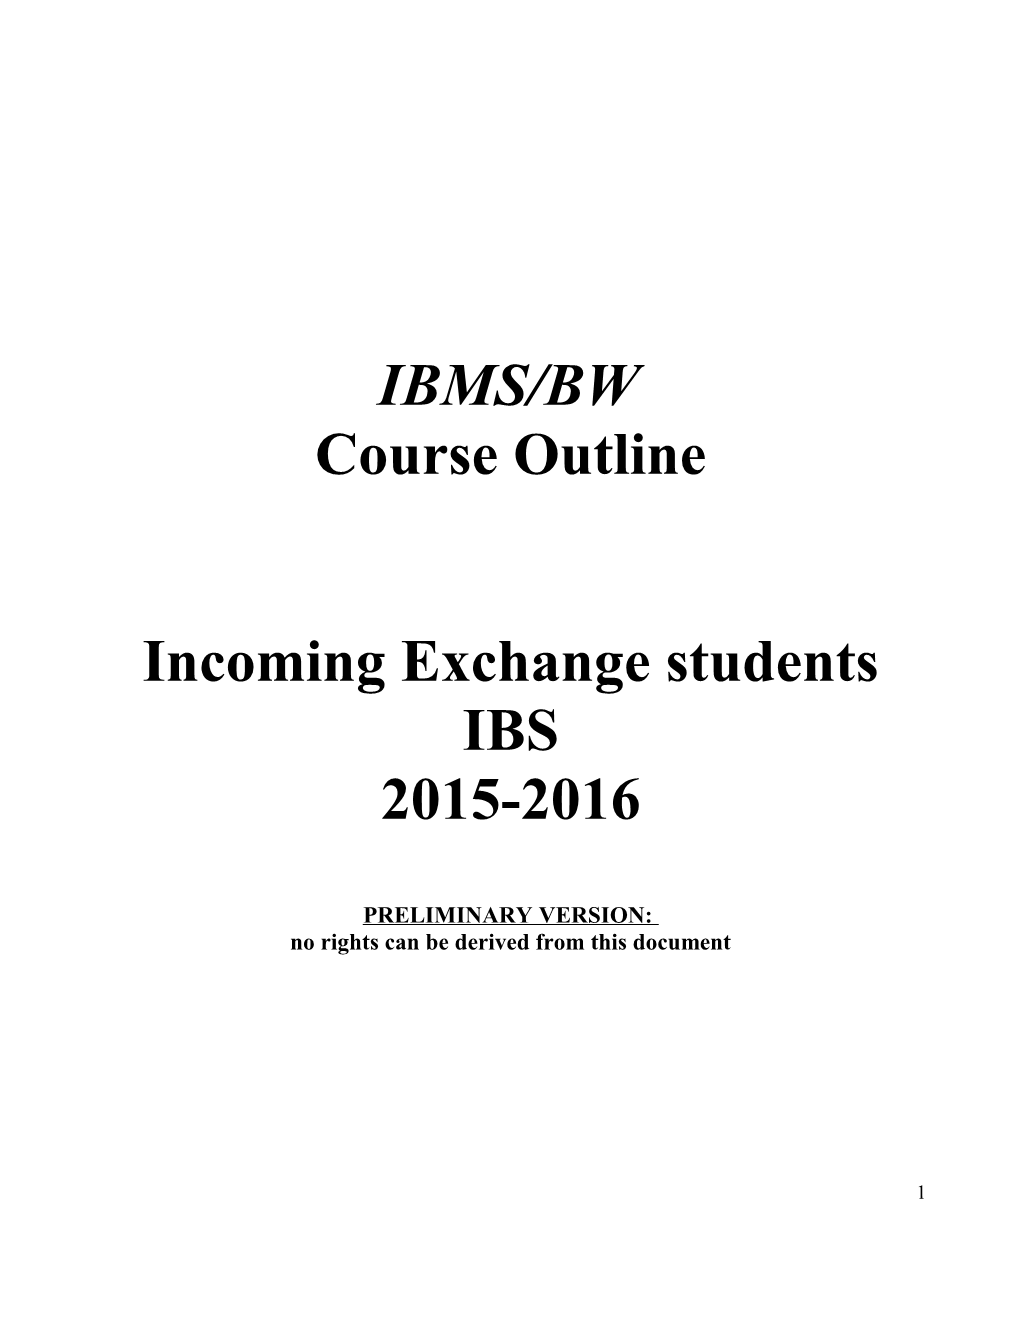 Incoming Exchange Students IBS